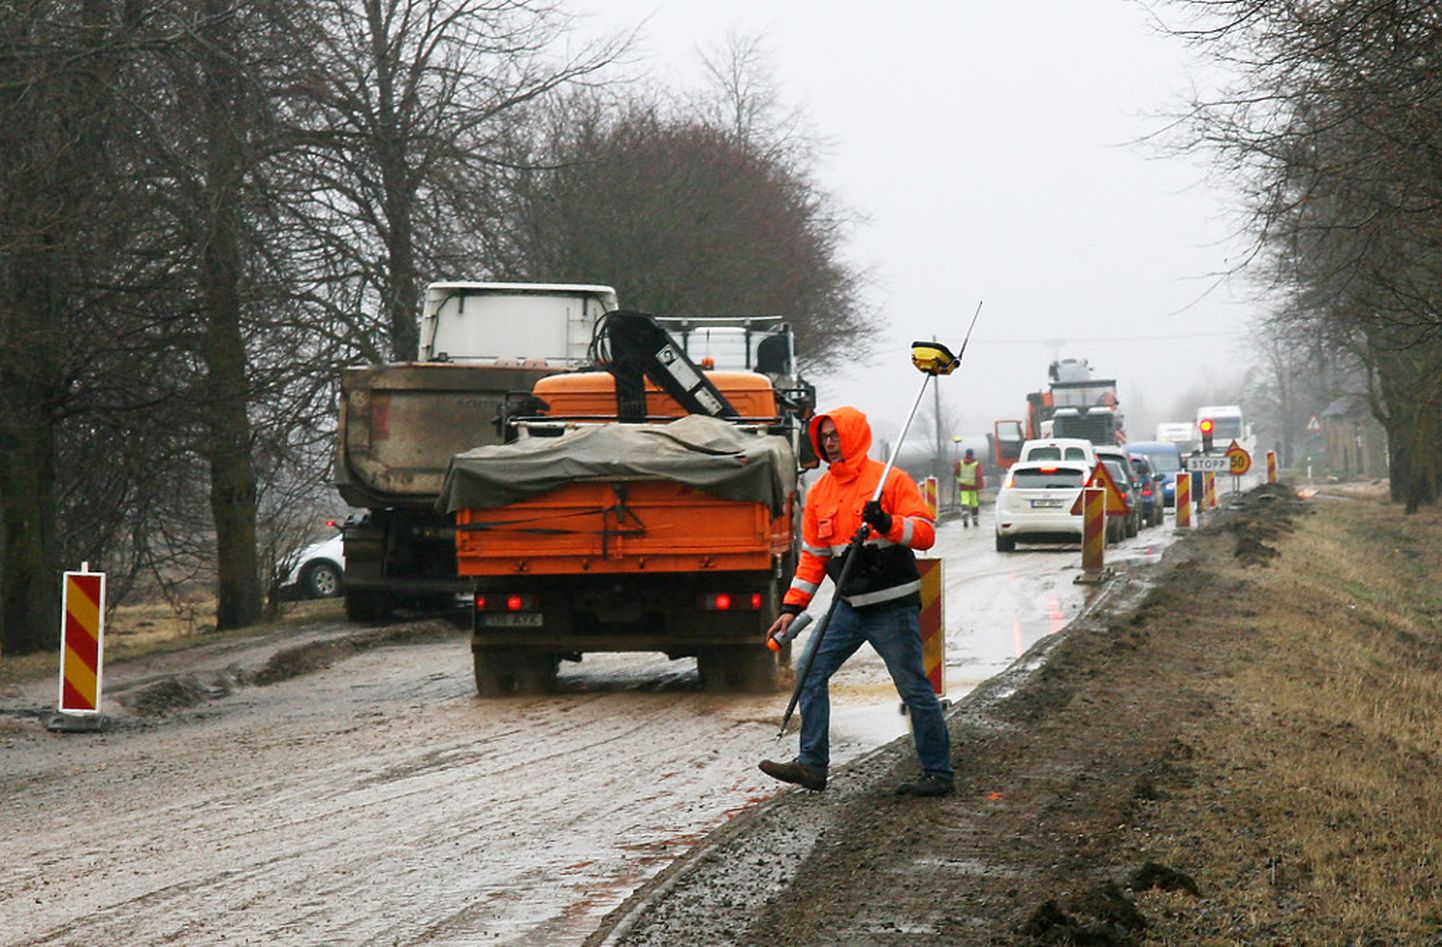 Jõhvi-Ereda tee ehitustööd pikendavad sõiduaega kuni kümme minutit, kuid töödega, mis liiklejaid häirivad, lubatakse valmis saada juba juunikuus. 

PEETER LILLEVÄLI